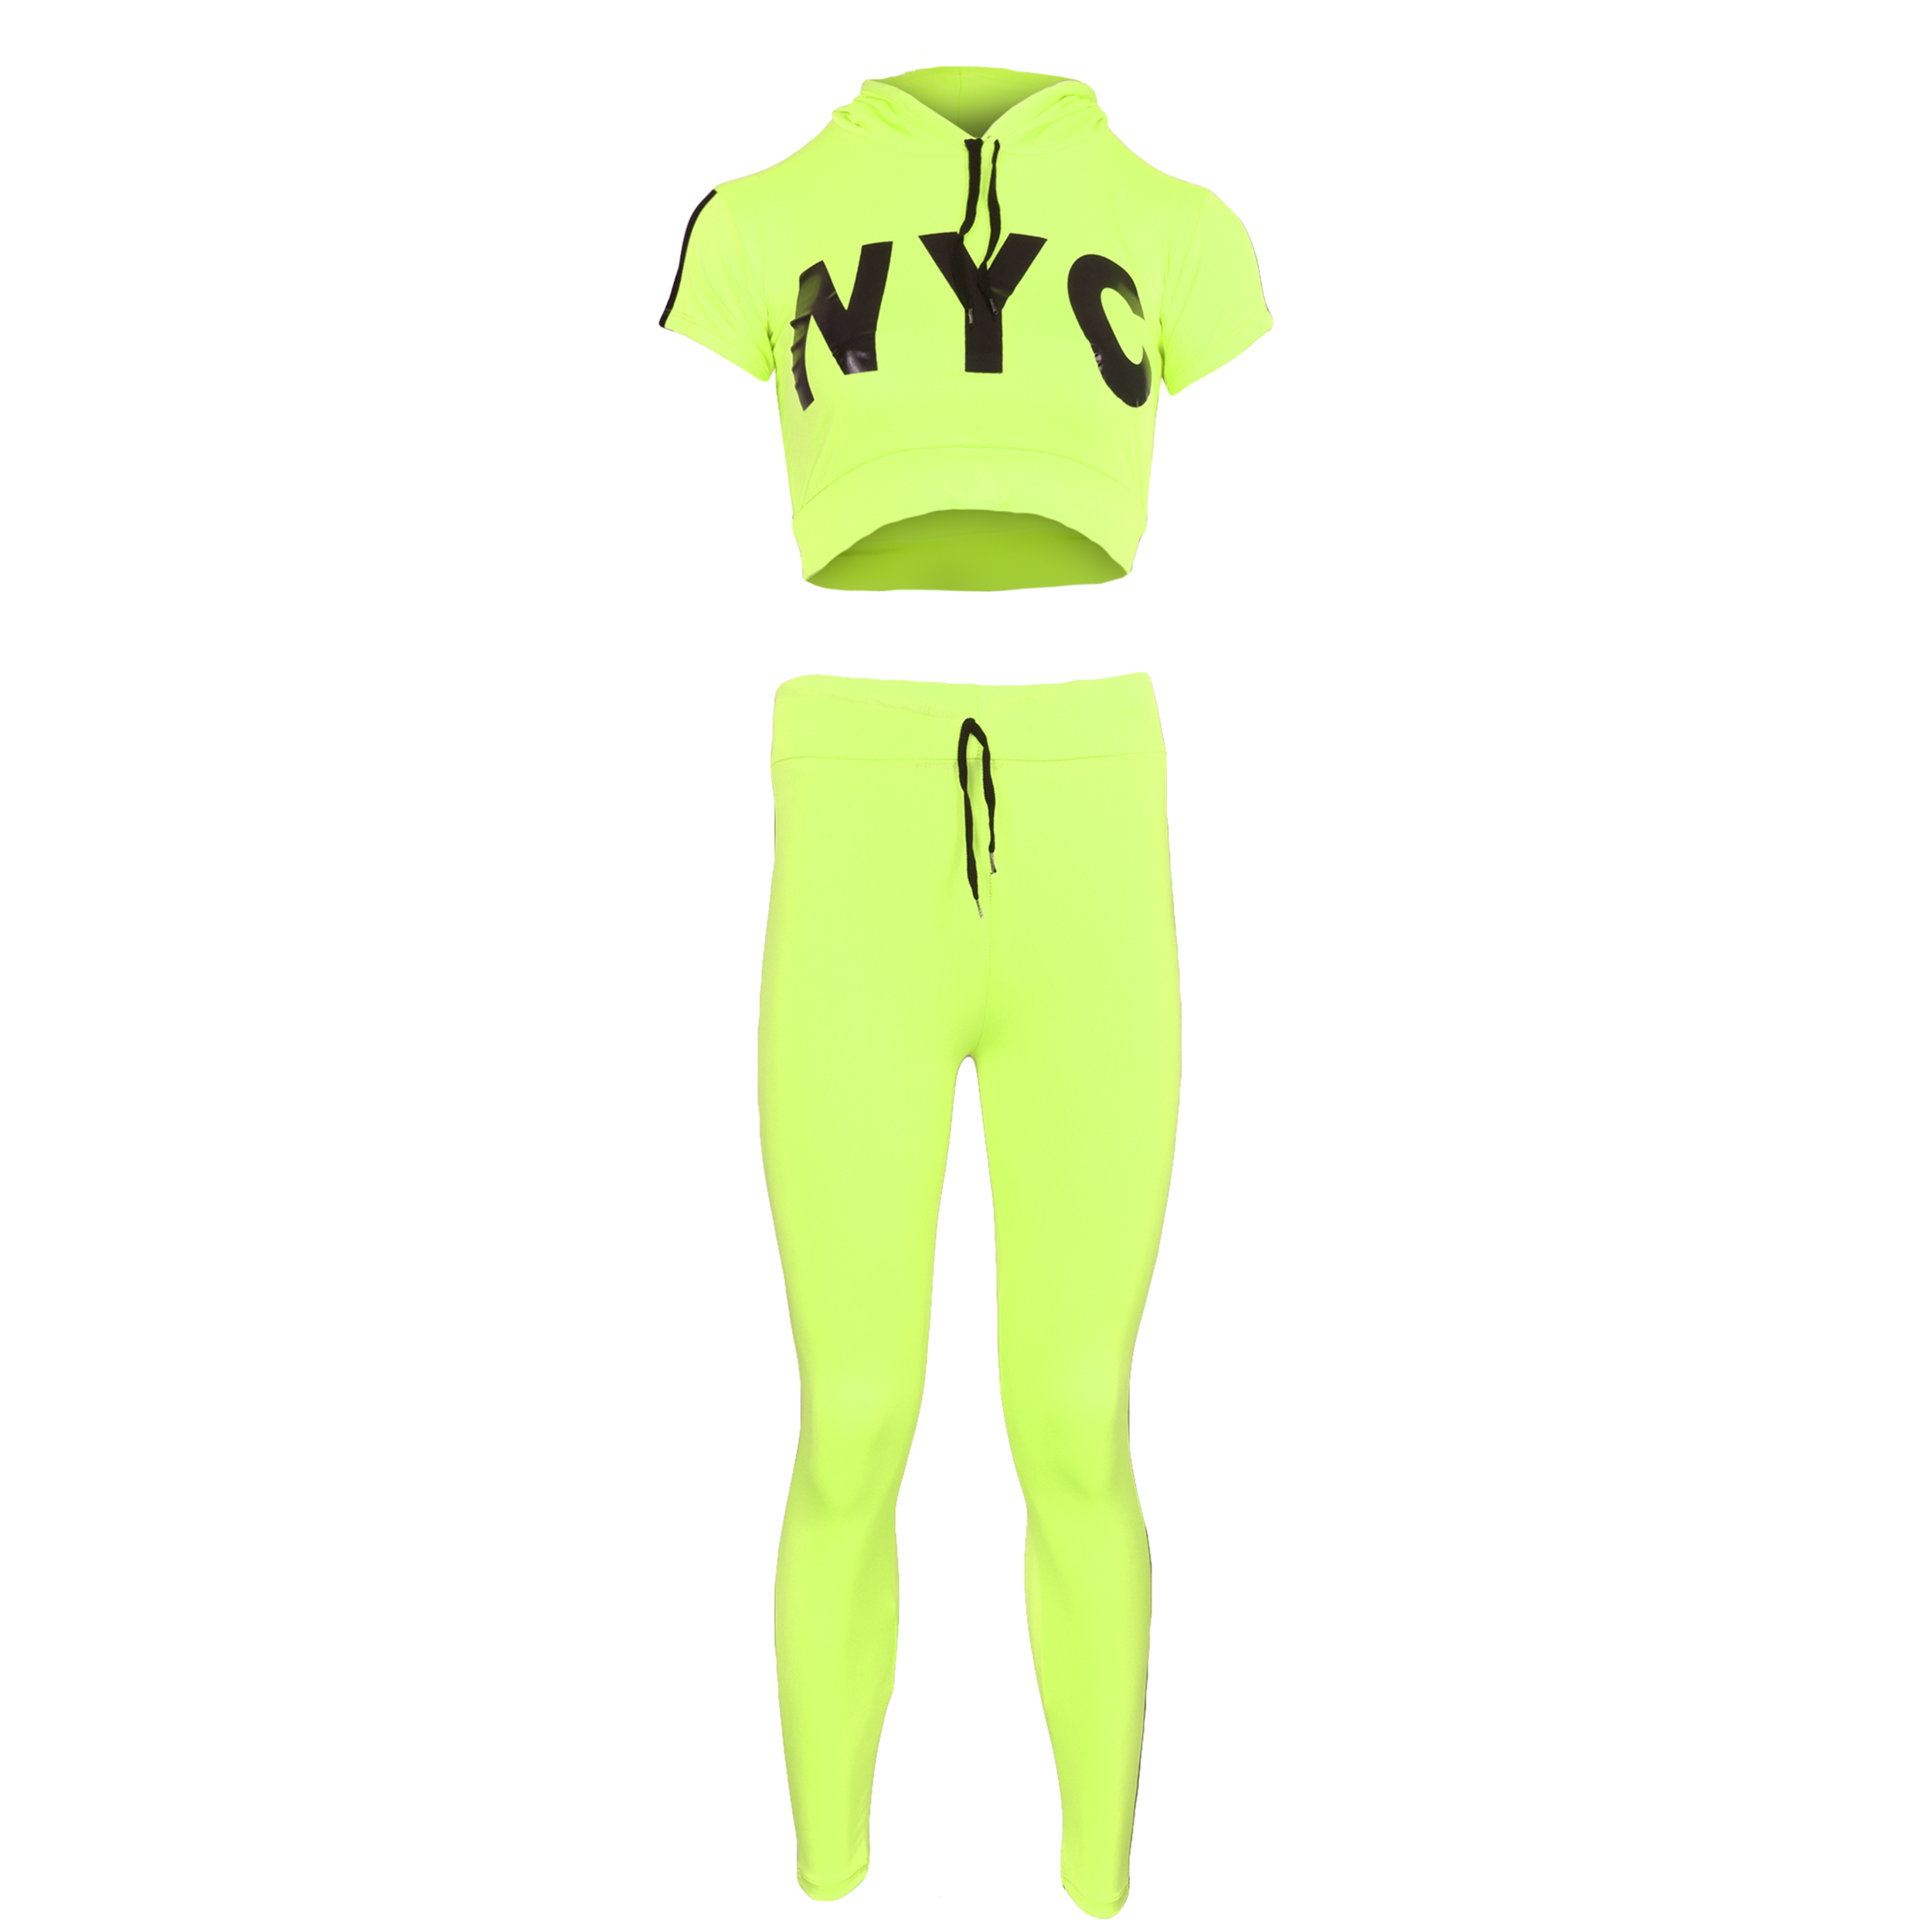 ست نیم تنه و لگینگ ورزشی زنانه کد 2596SF رنگ سبز فسفری